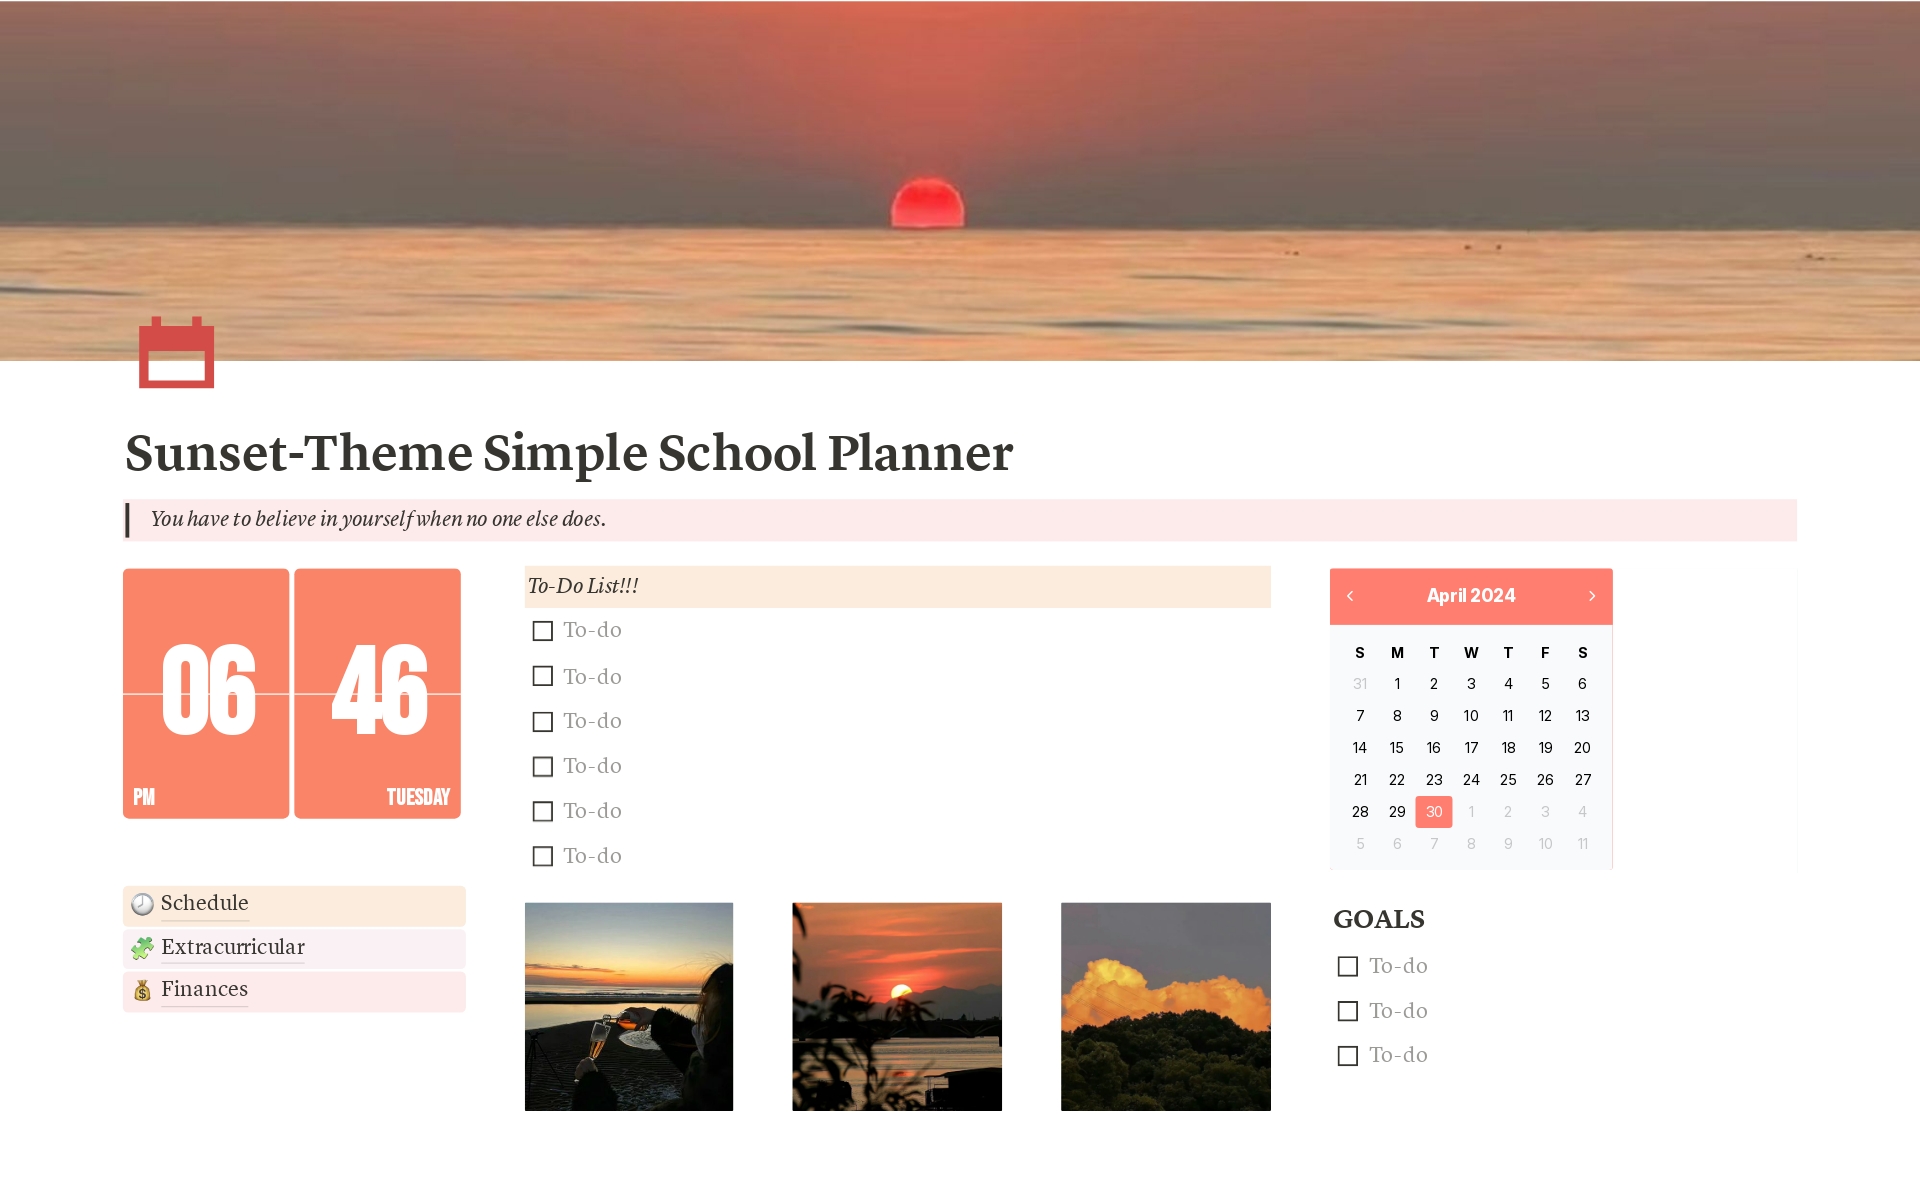 Uma prévia do modelo para Sunset-Theme Simple School Planner